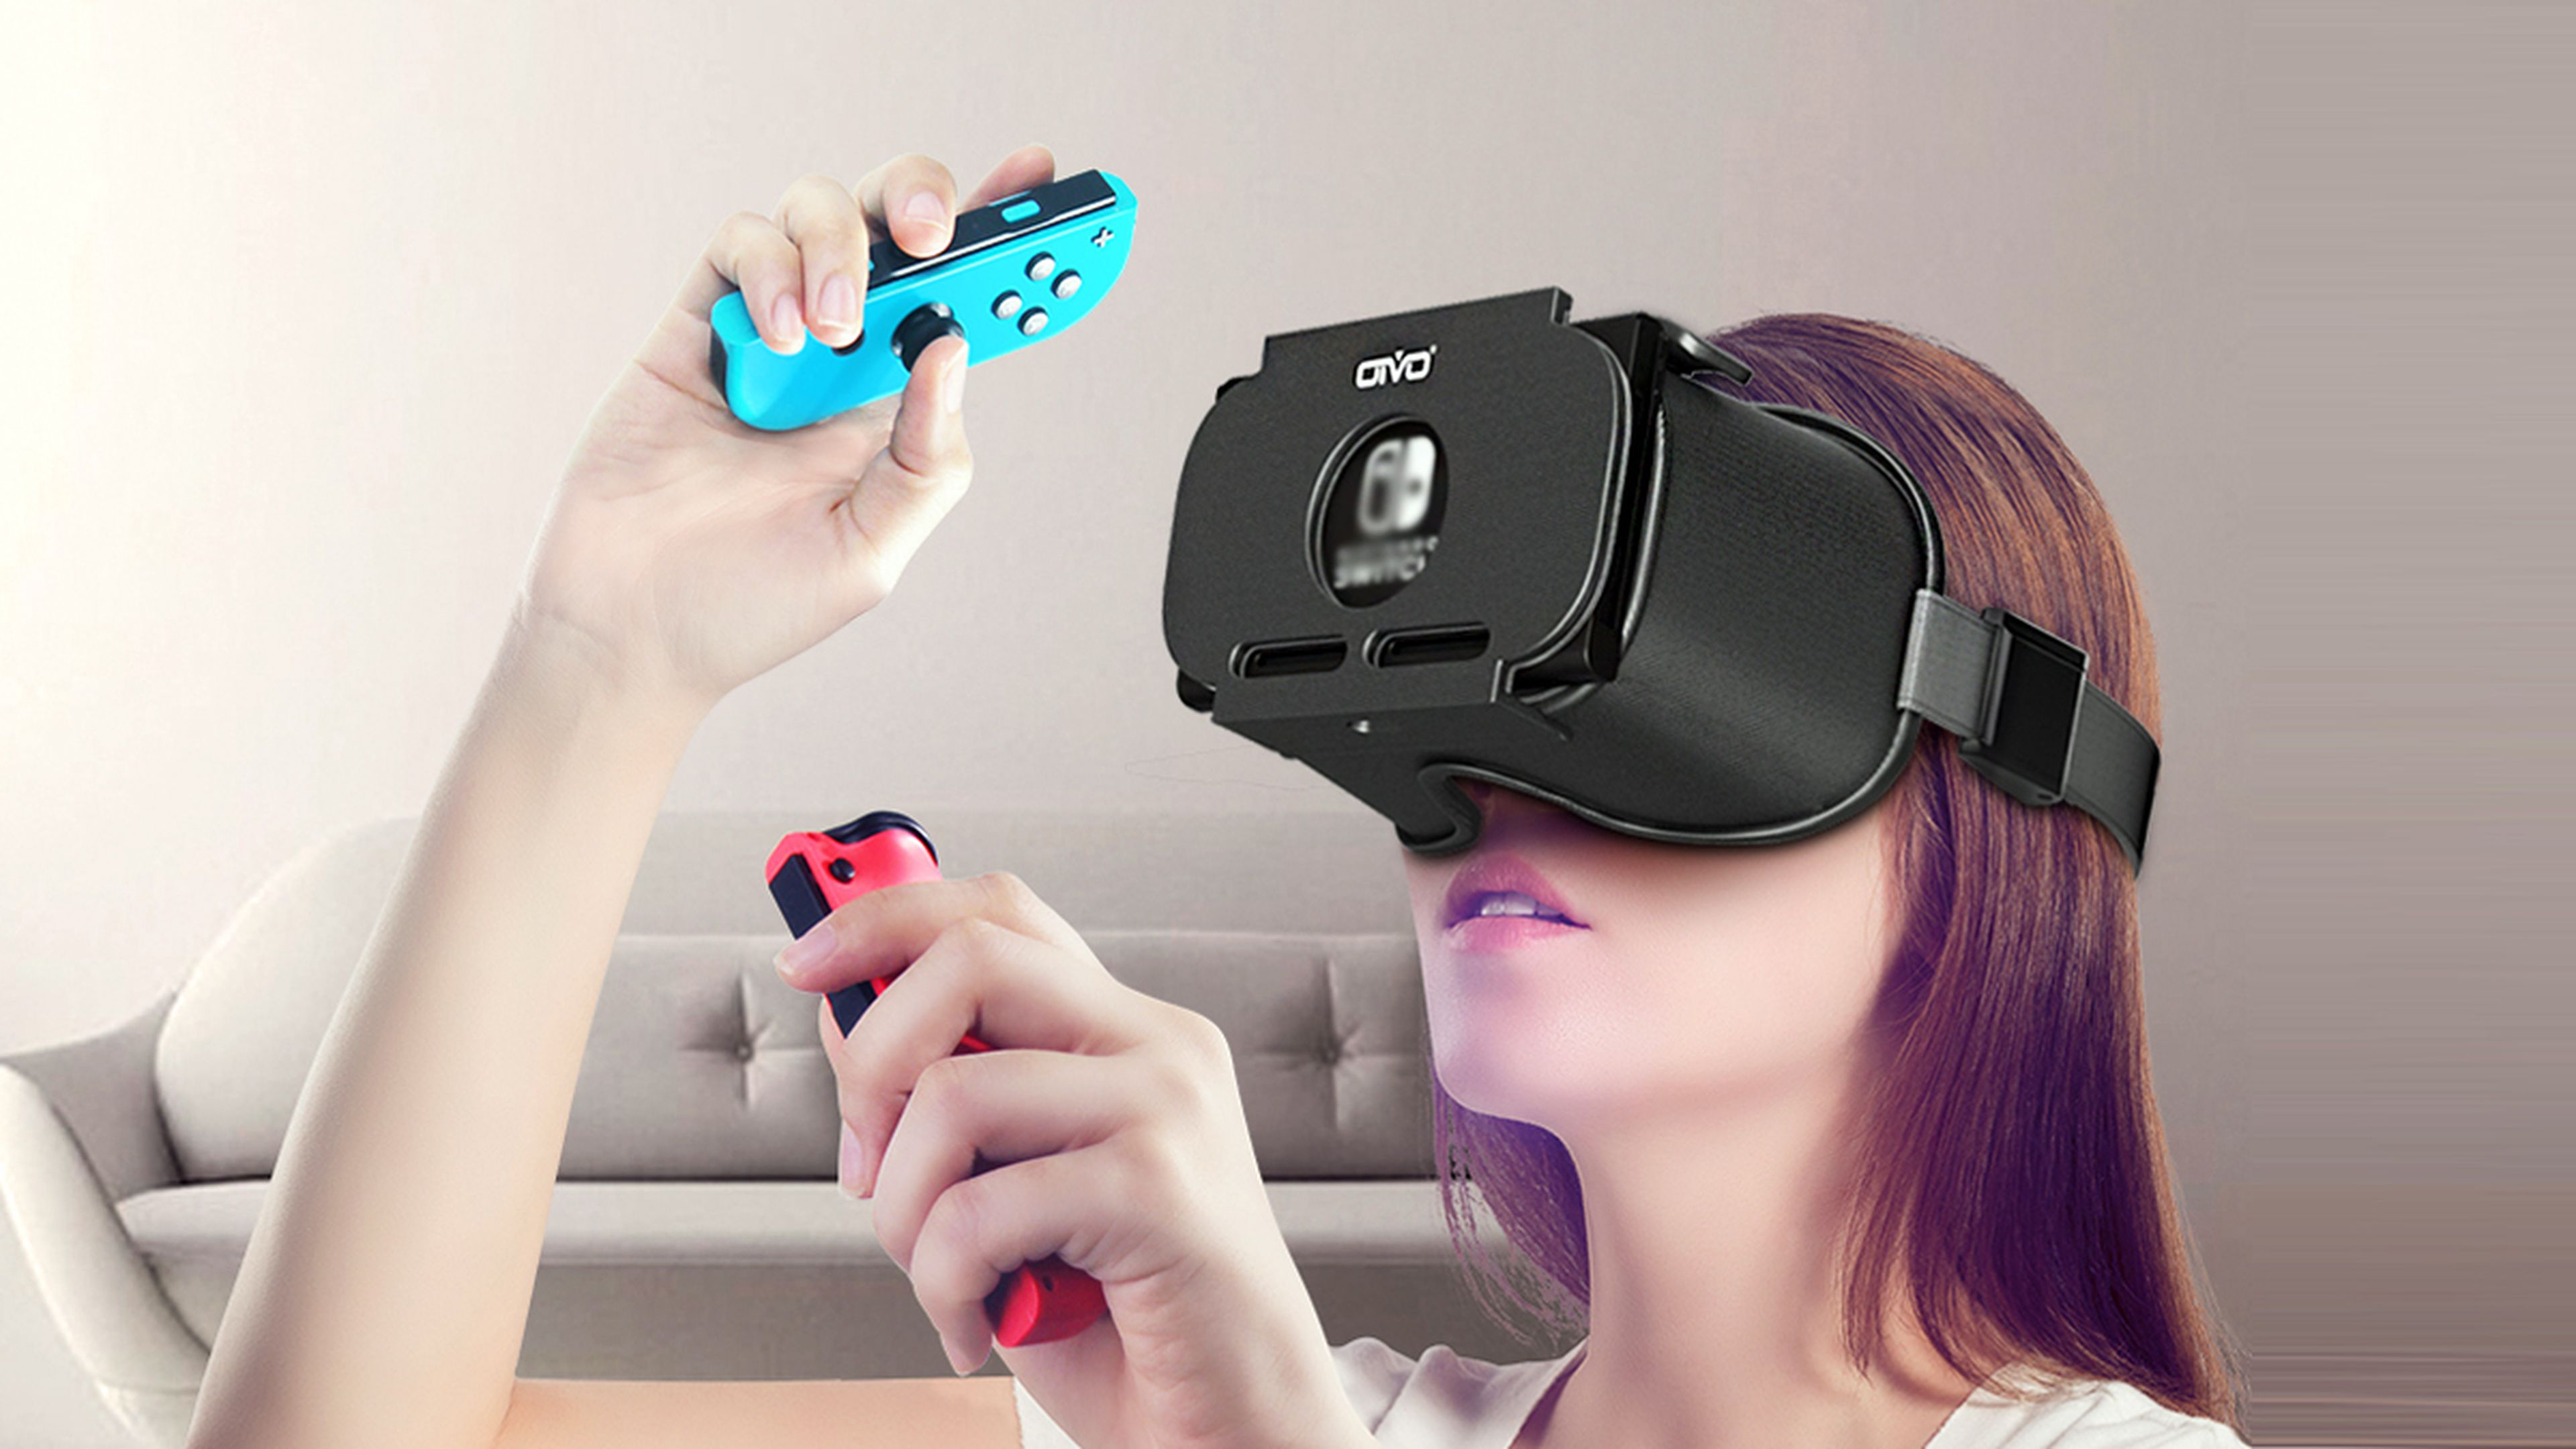 Gafas de realidad virtual 3D para TV, películas y videojuegos